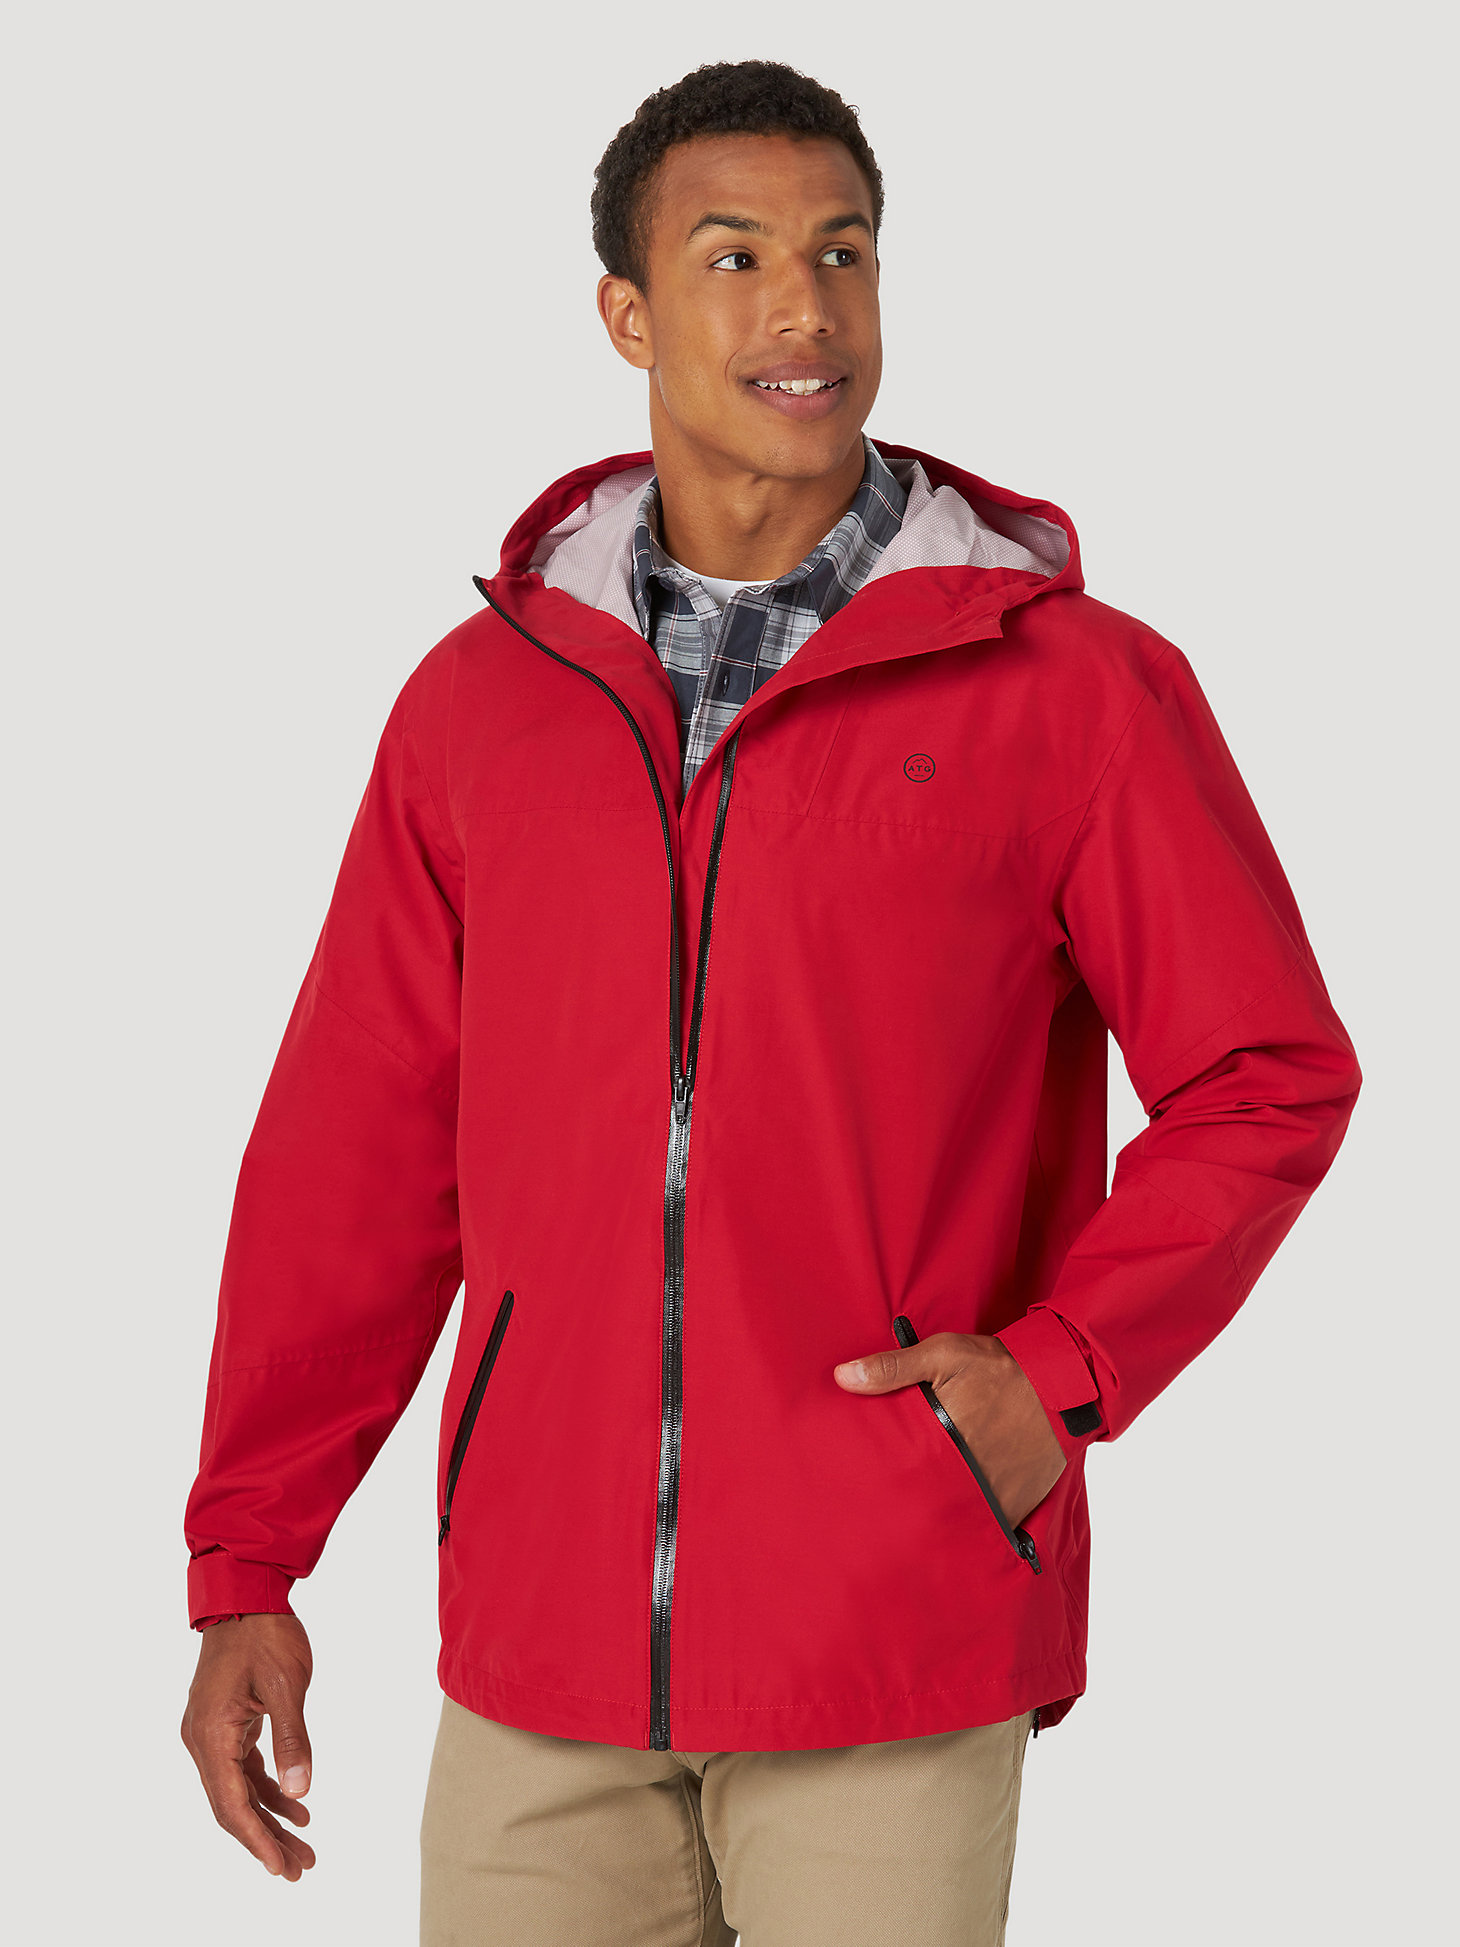 All terrain gear By Wrangler® Men's Rain Jacket in Red main view